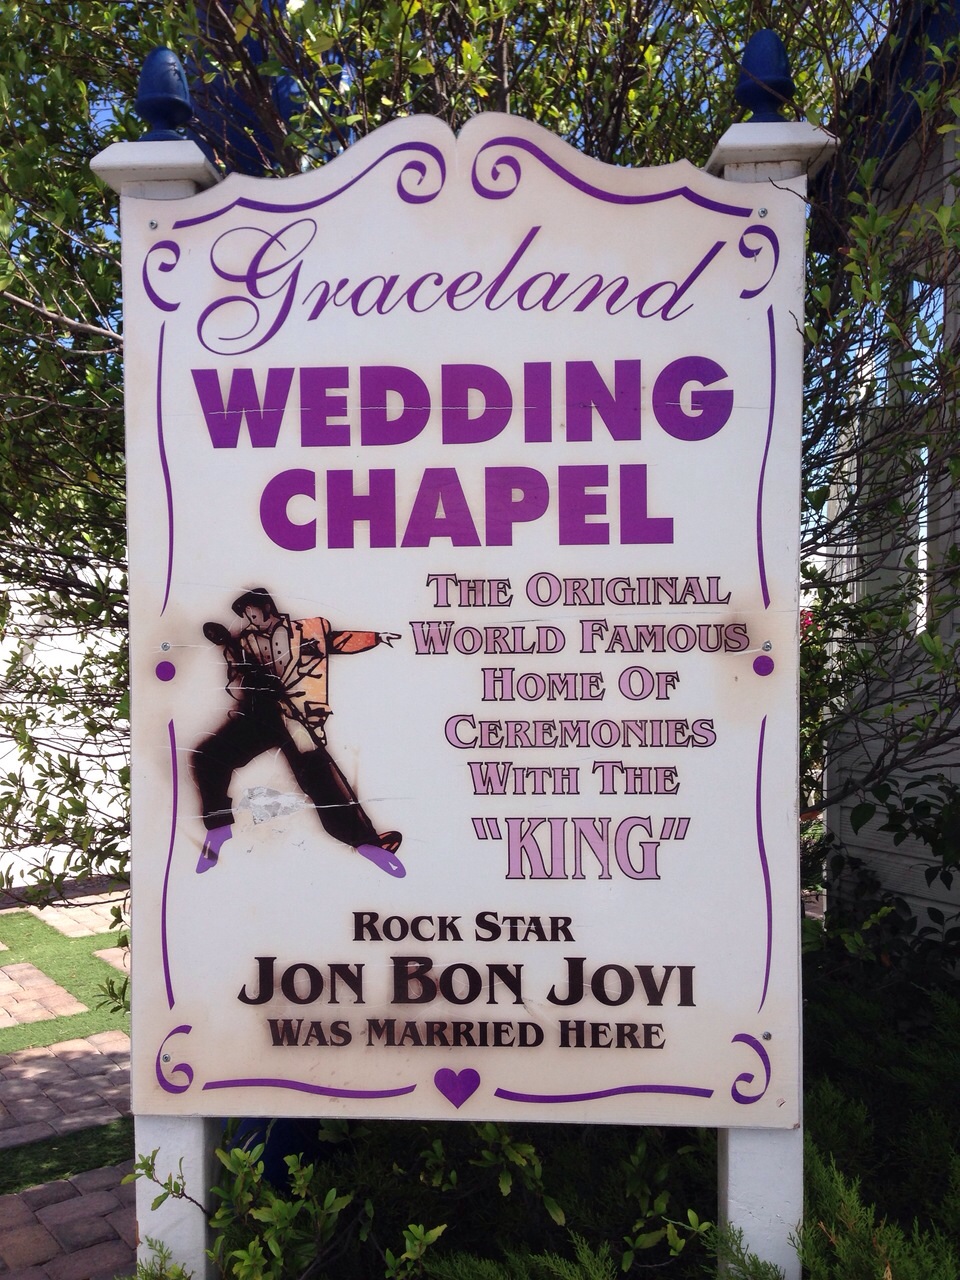 La capilla de bodas Graceland, hogar de las ceremonias con "el Rey"